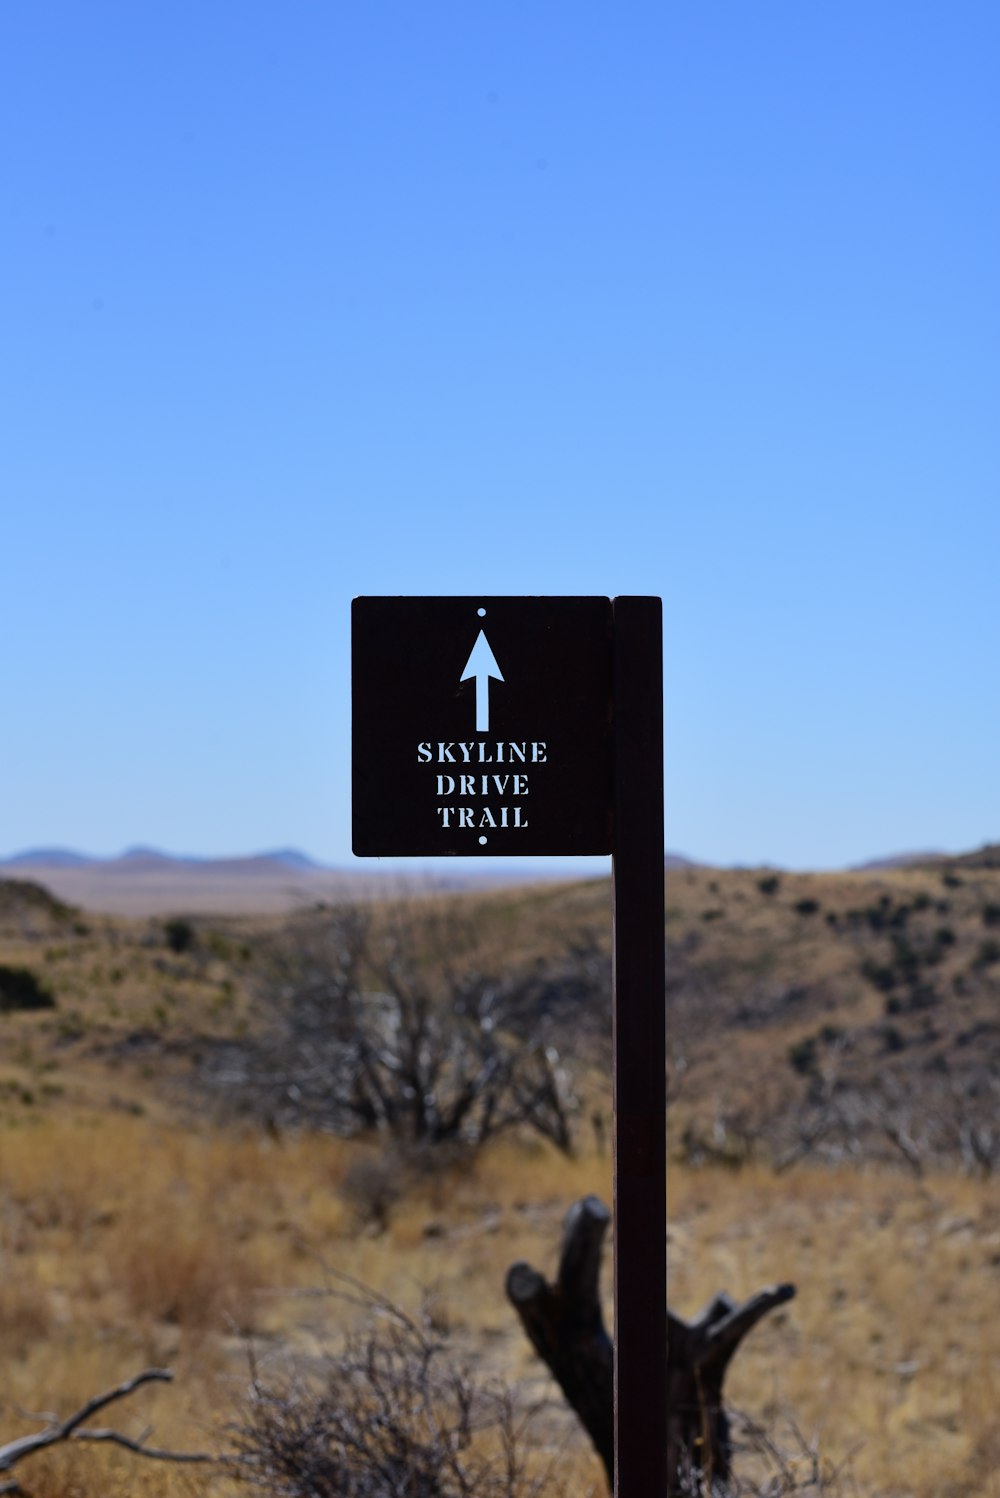 a sign in a desert